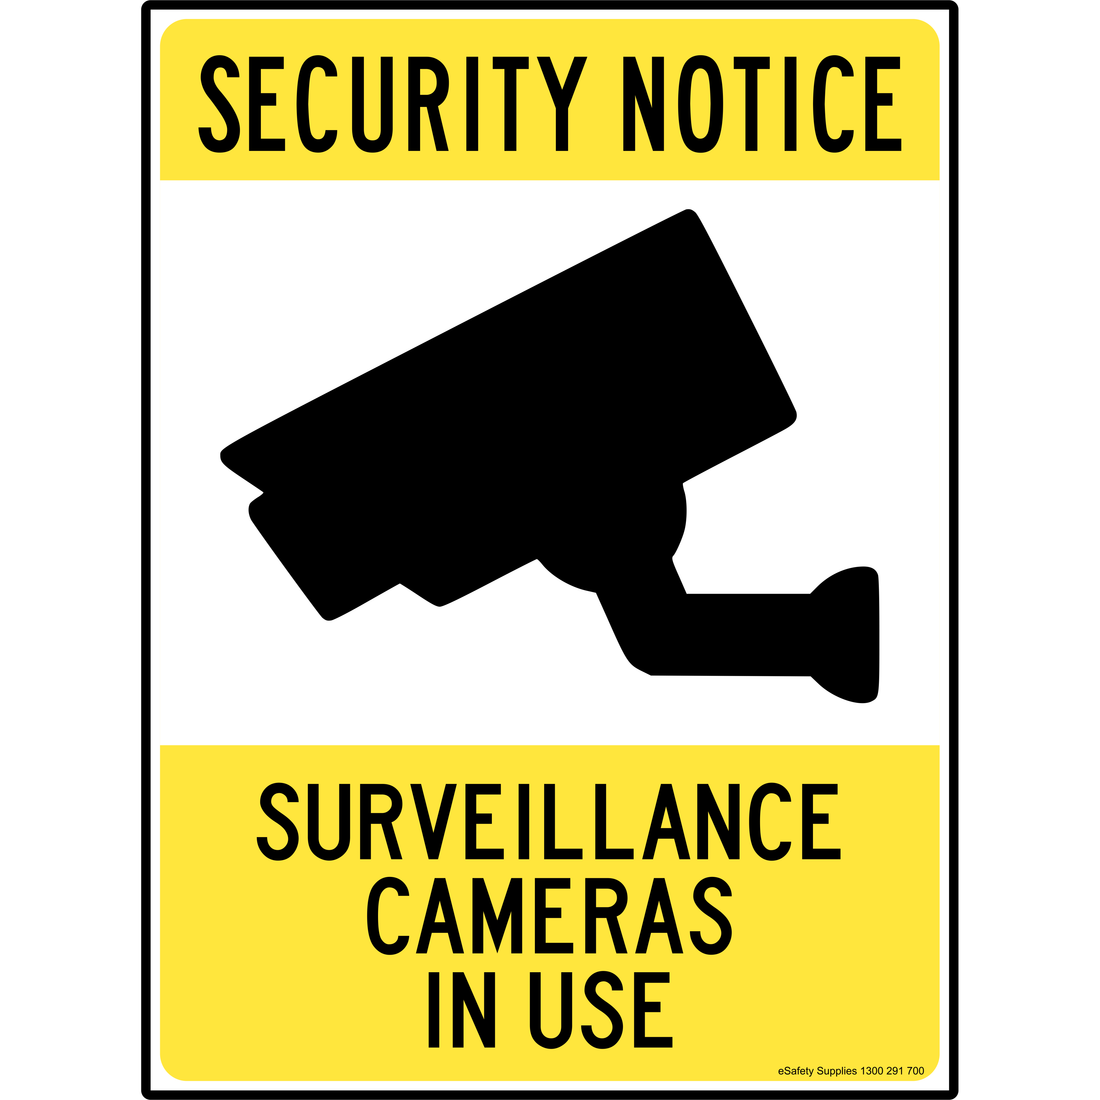 SECURITY NOTICE - SURVEILLANCE CAMERAS IN USE